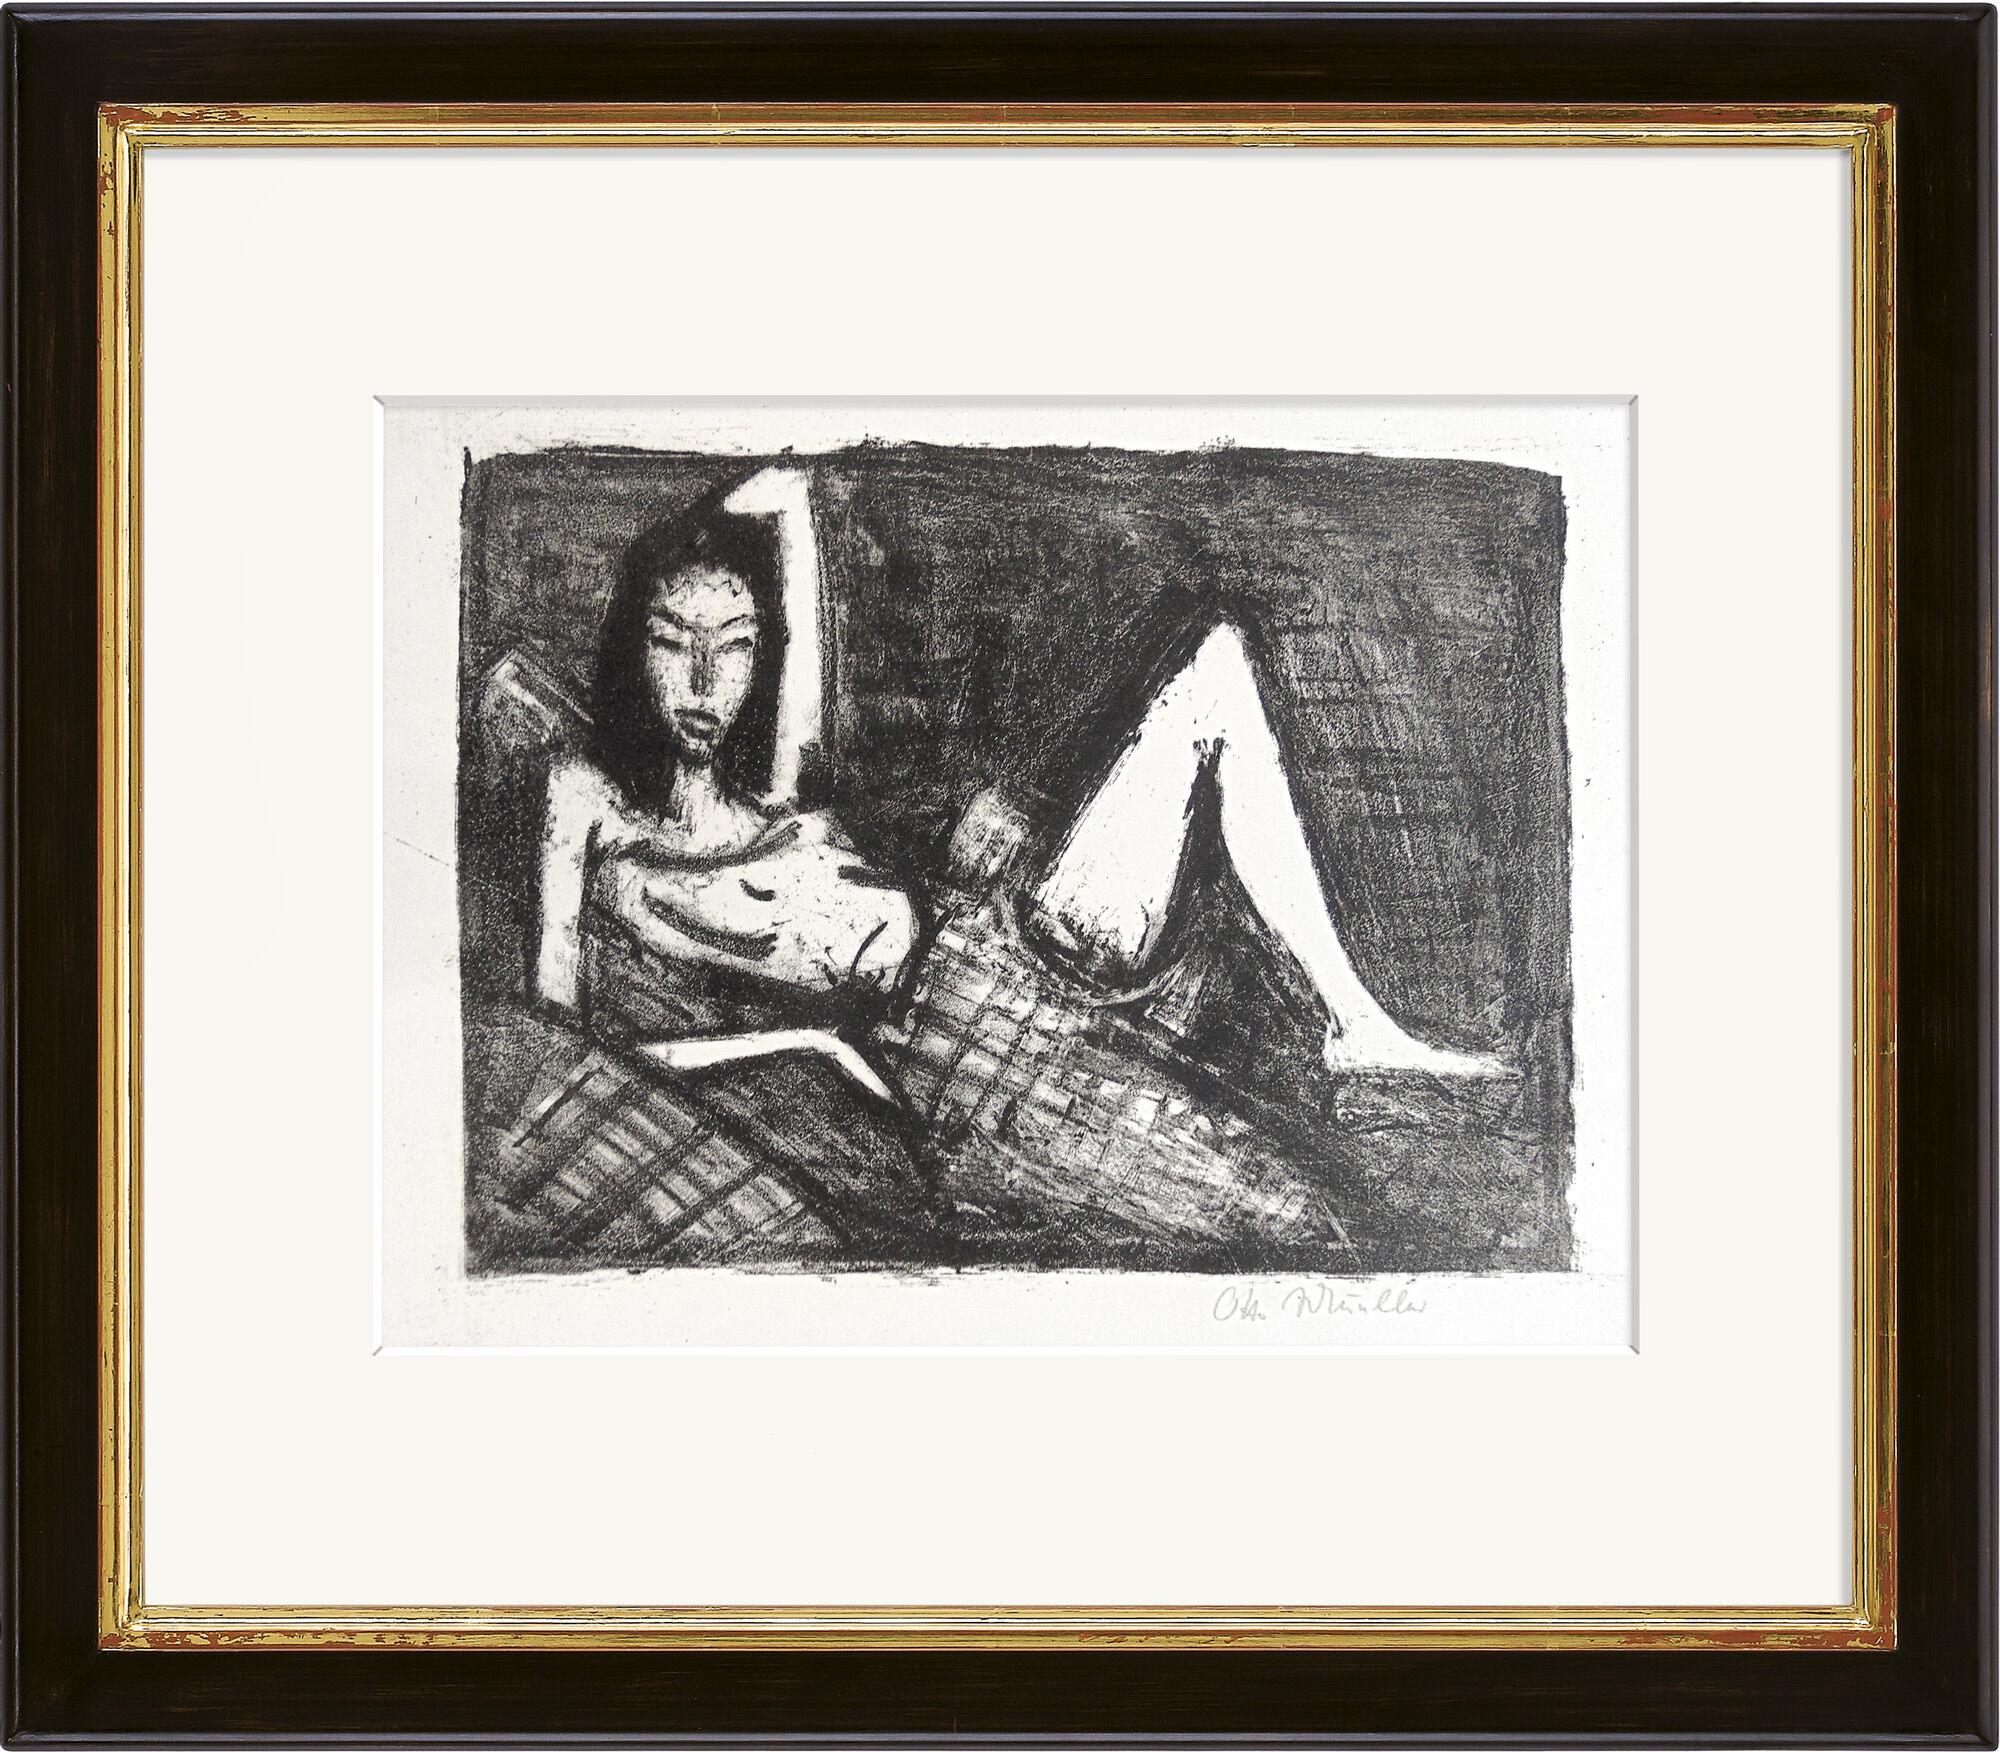 Billede "Pige på sofaen" (1921/22) von Otto Mueller